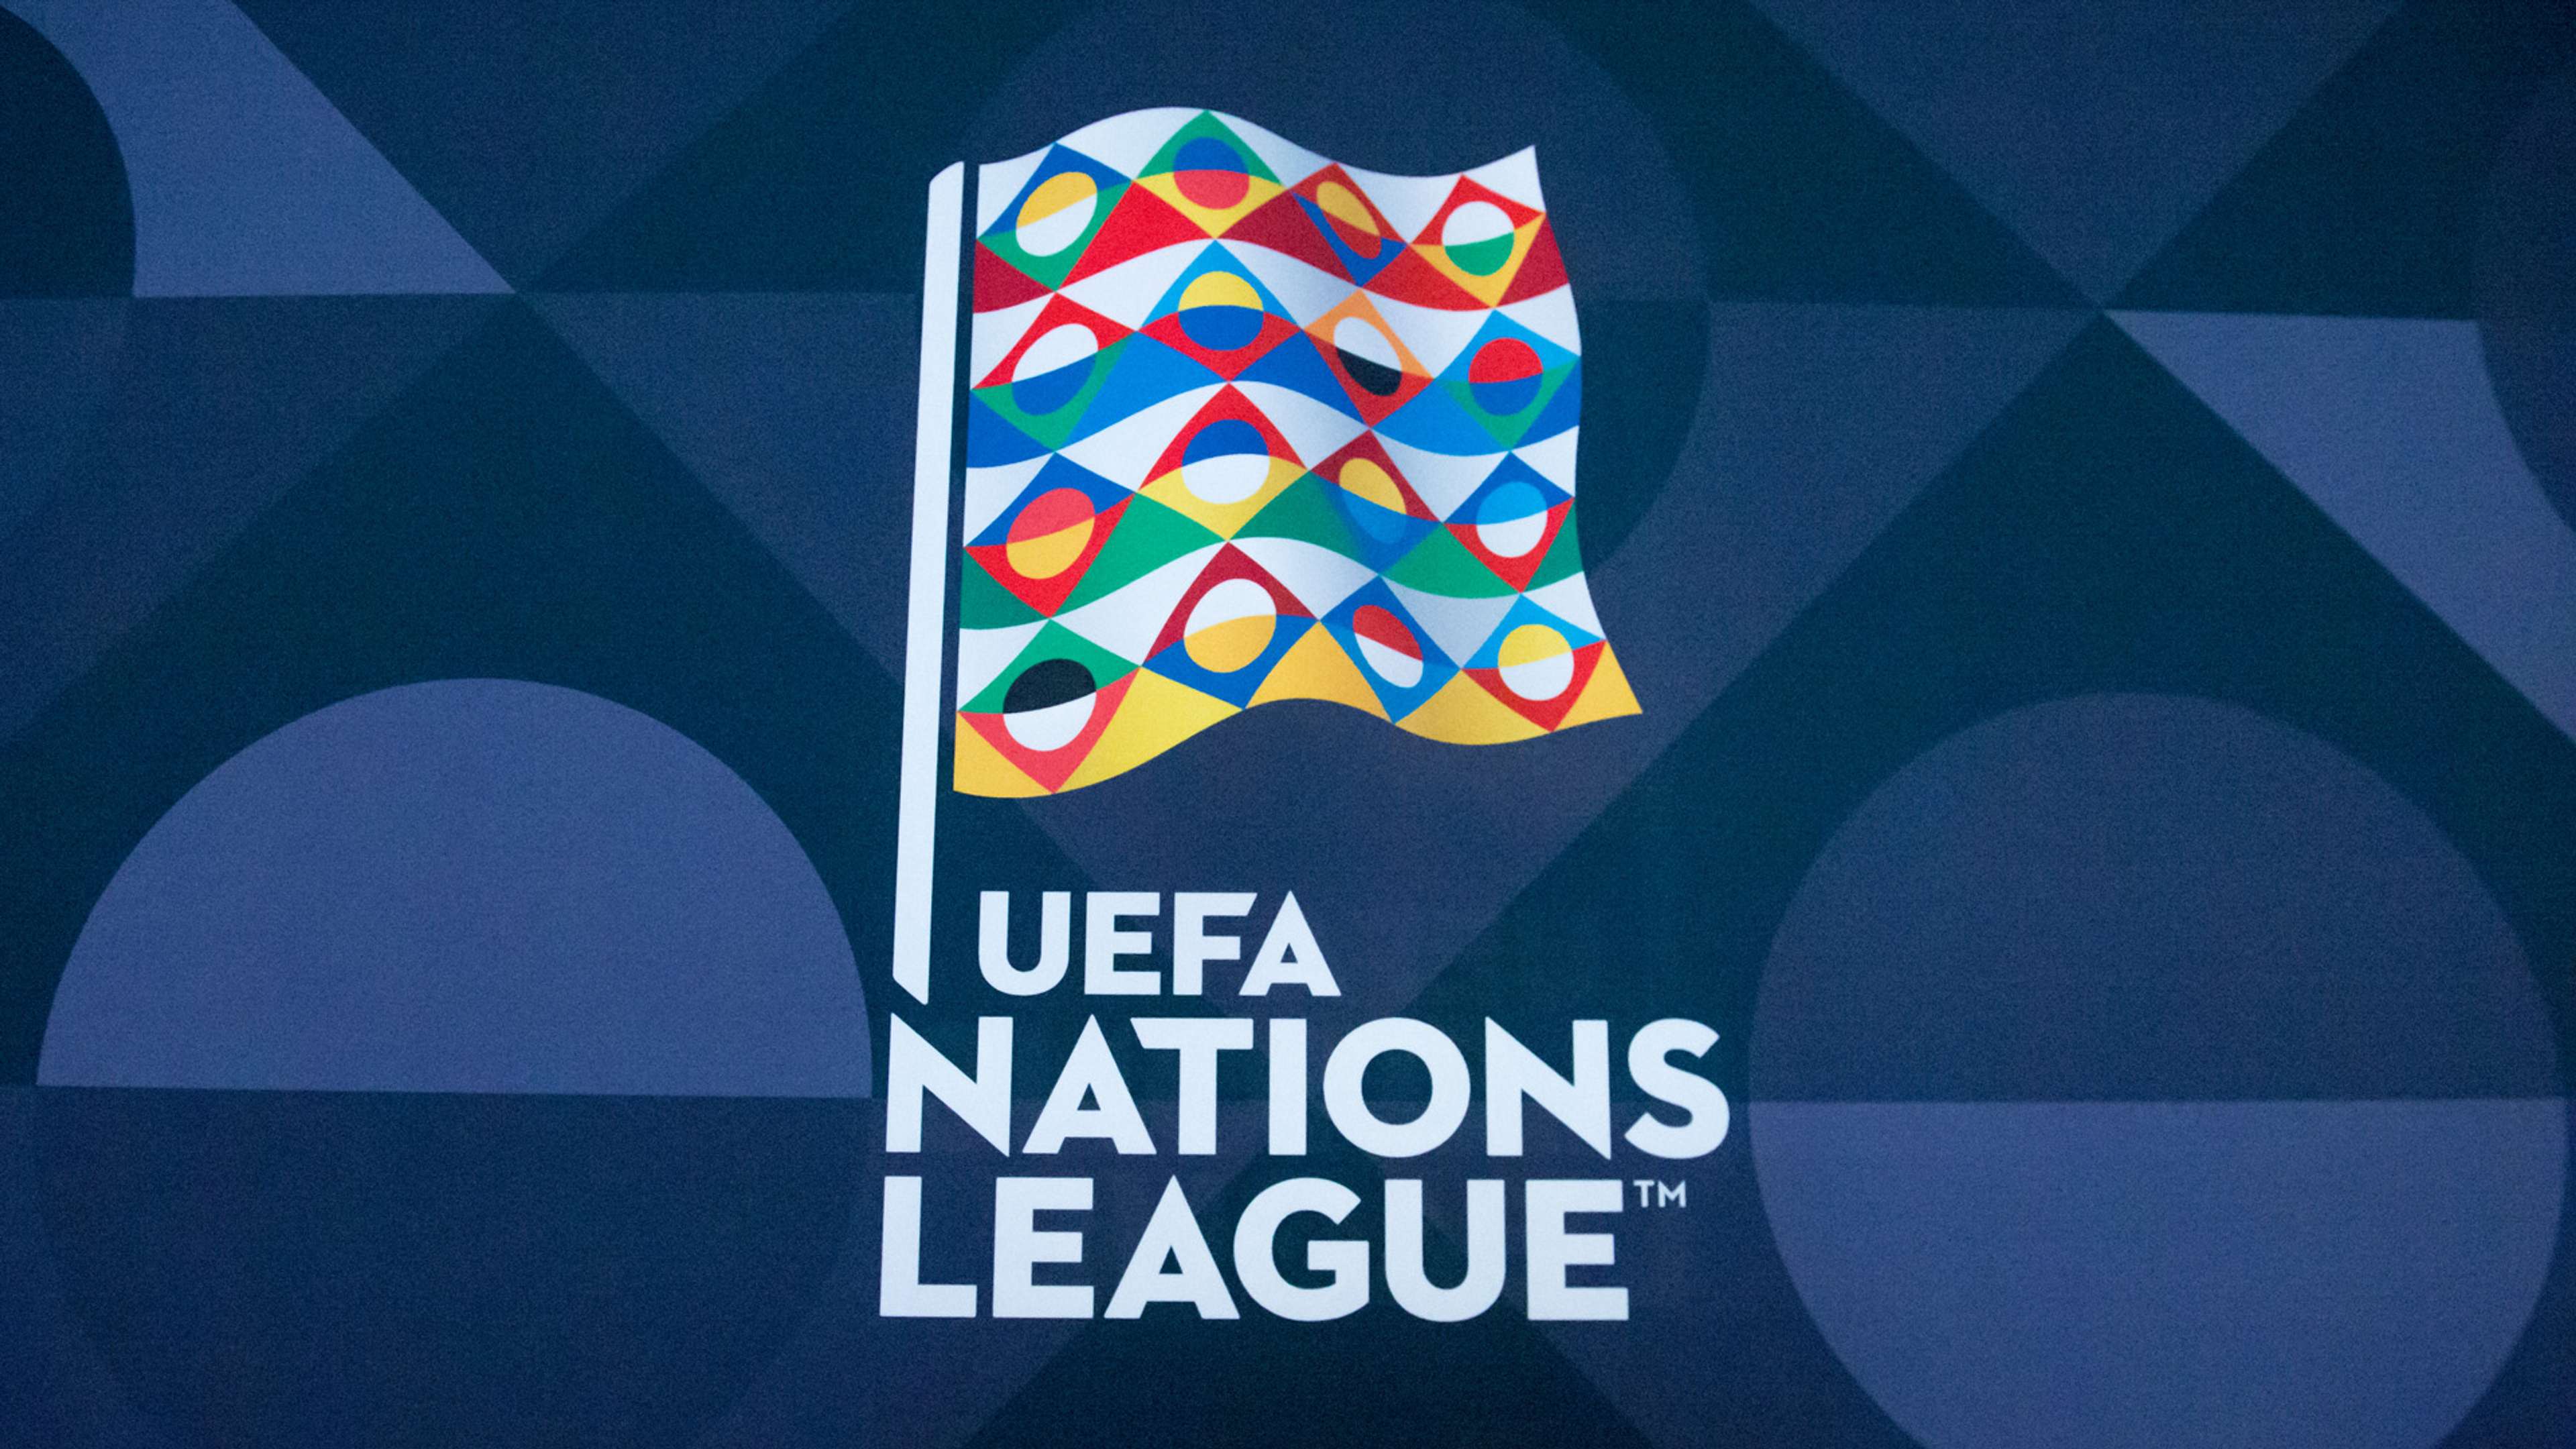 UEFA Nations League Logo 2018